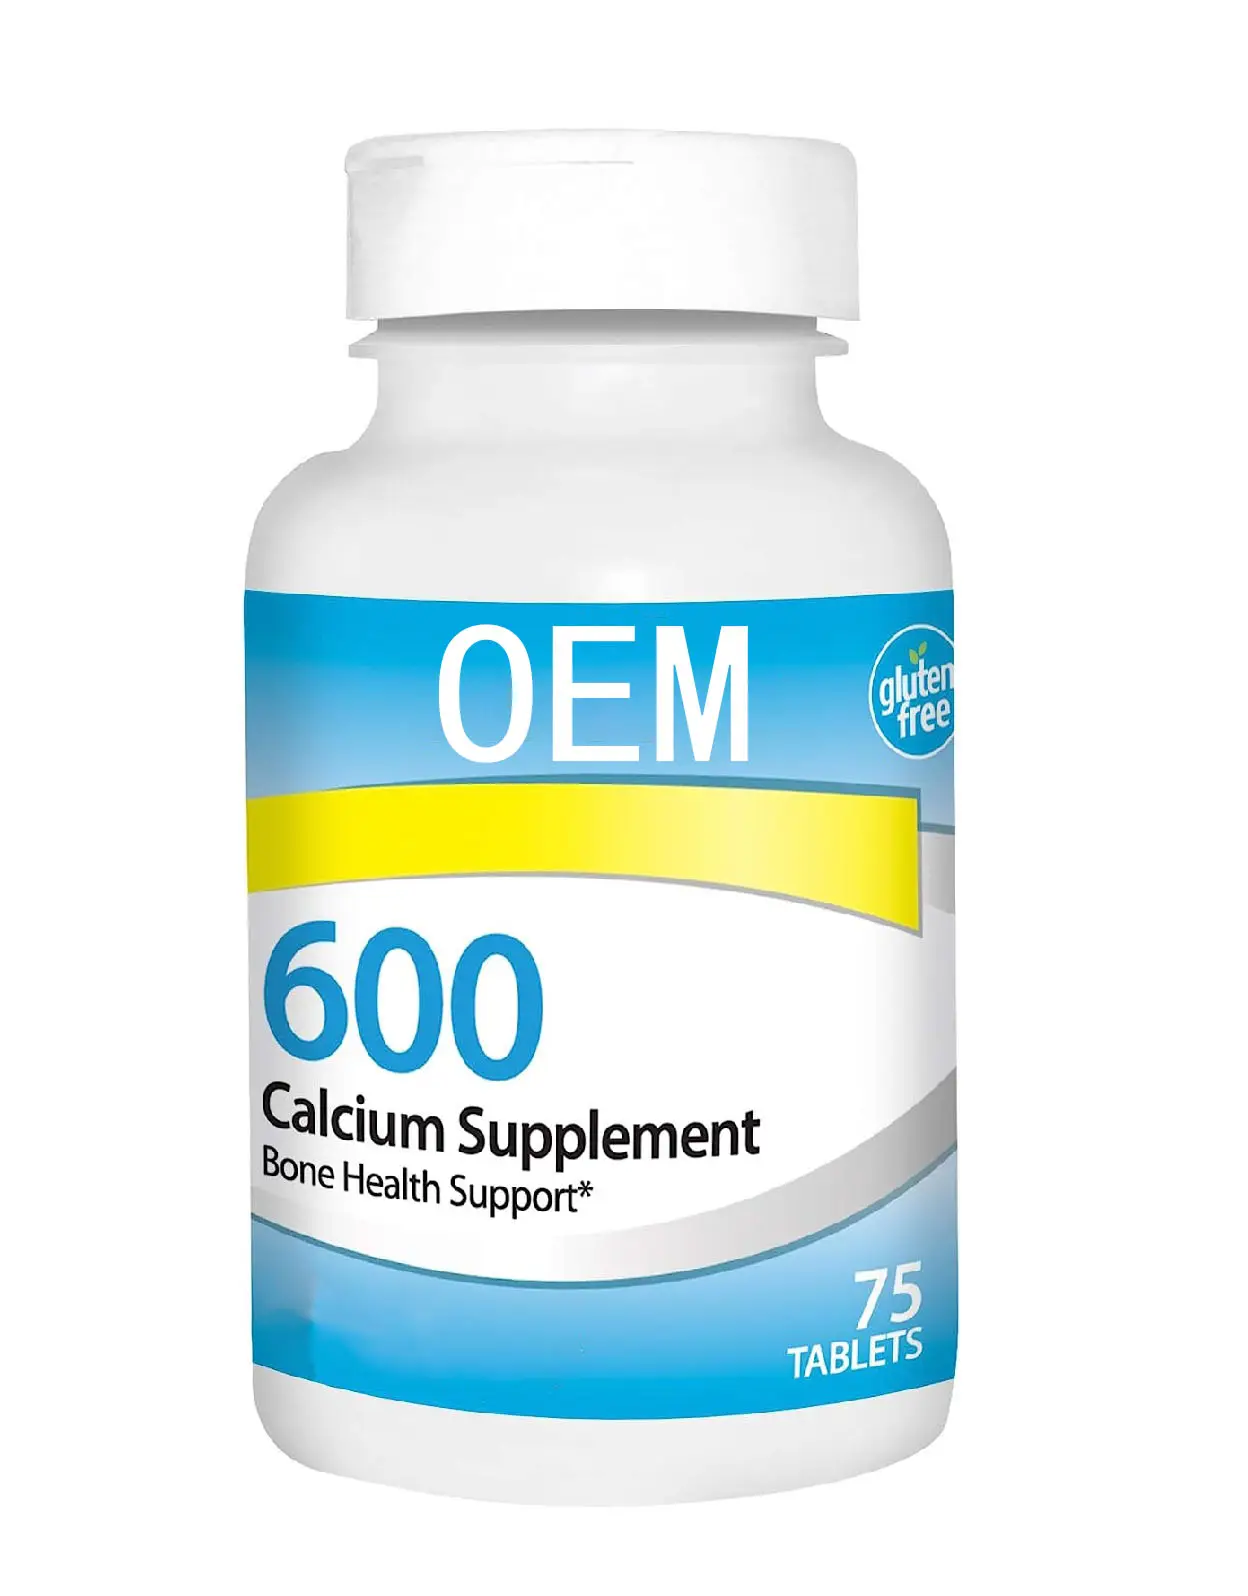 OEM Kalzium-Supplement 600 mg Nahrungsergänzungsmittel-Supplement Knochencalzium 75 Tabletten nicht-GMO und bio